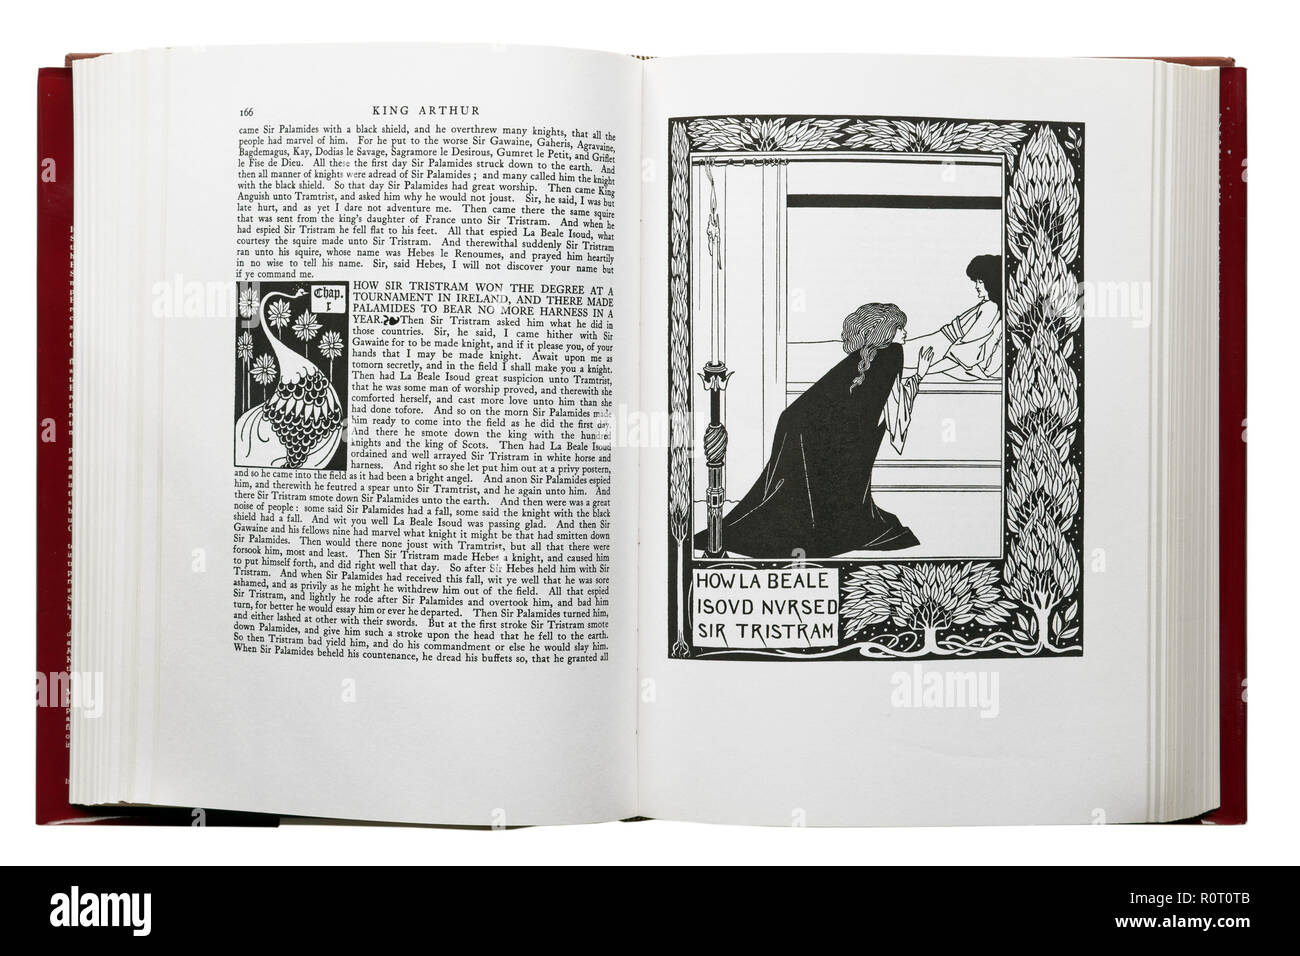 Le morte d'Arthur de Sir Thomas Malory. Illustration Comment La Isoud Beale soigné Sir Tristram par Aubrey Beardsley Banque D'Images